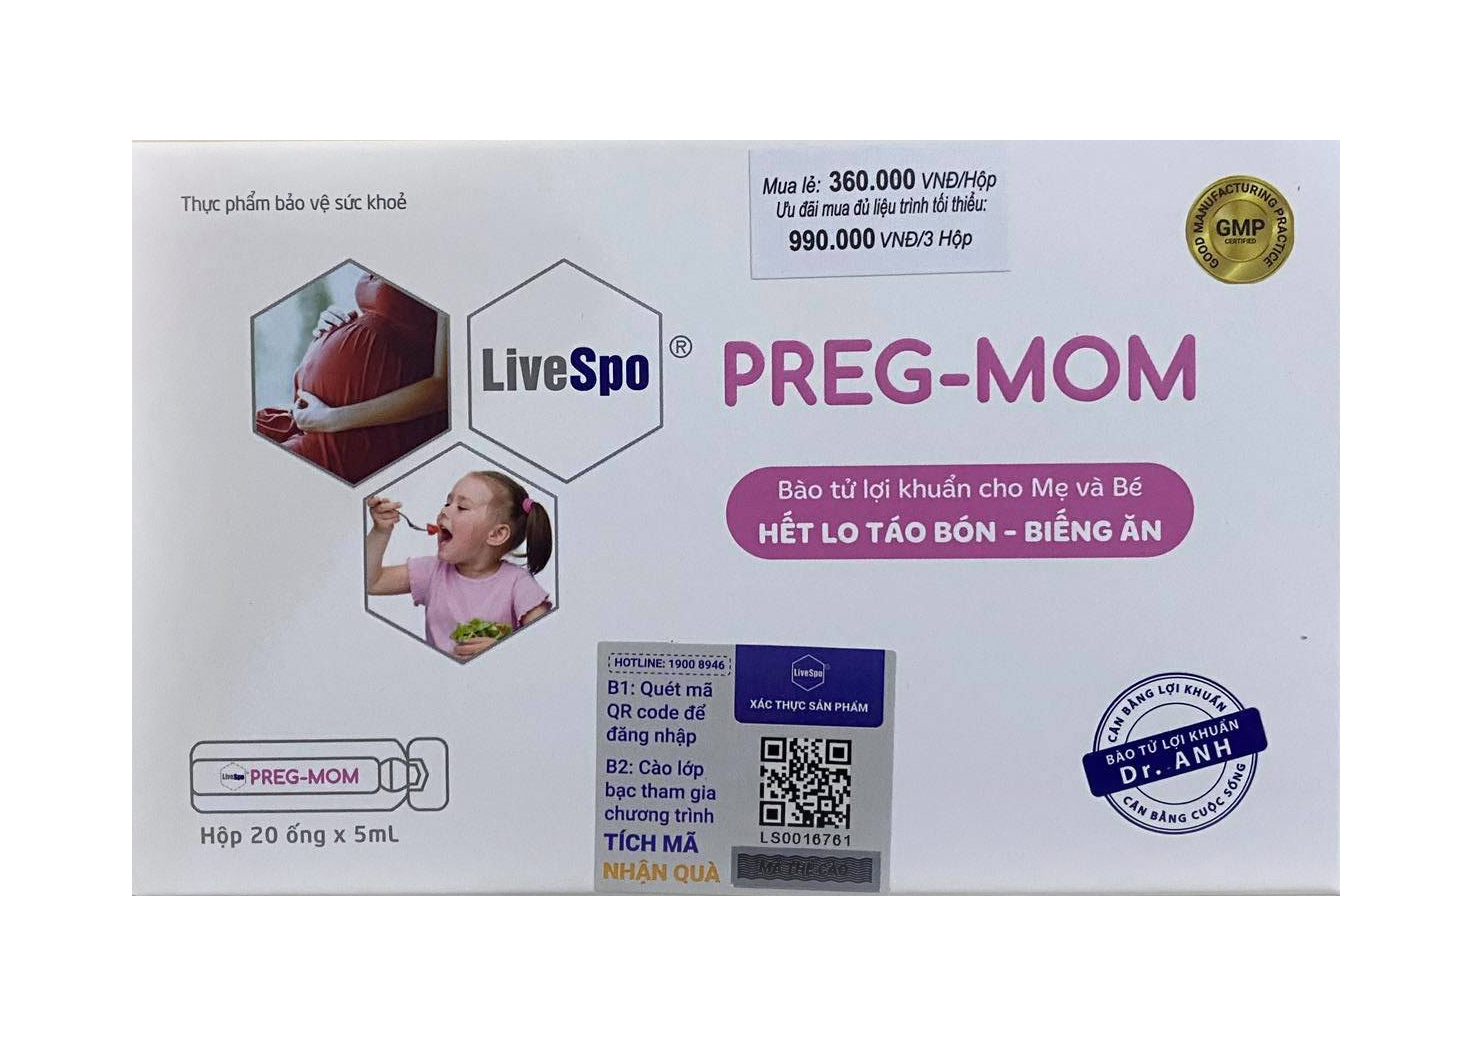 Bào tử lợi khuẩn cho mẹ và bé LiveSpo Preg-Mom mẫu mới